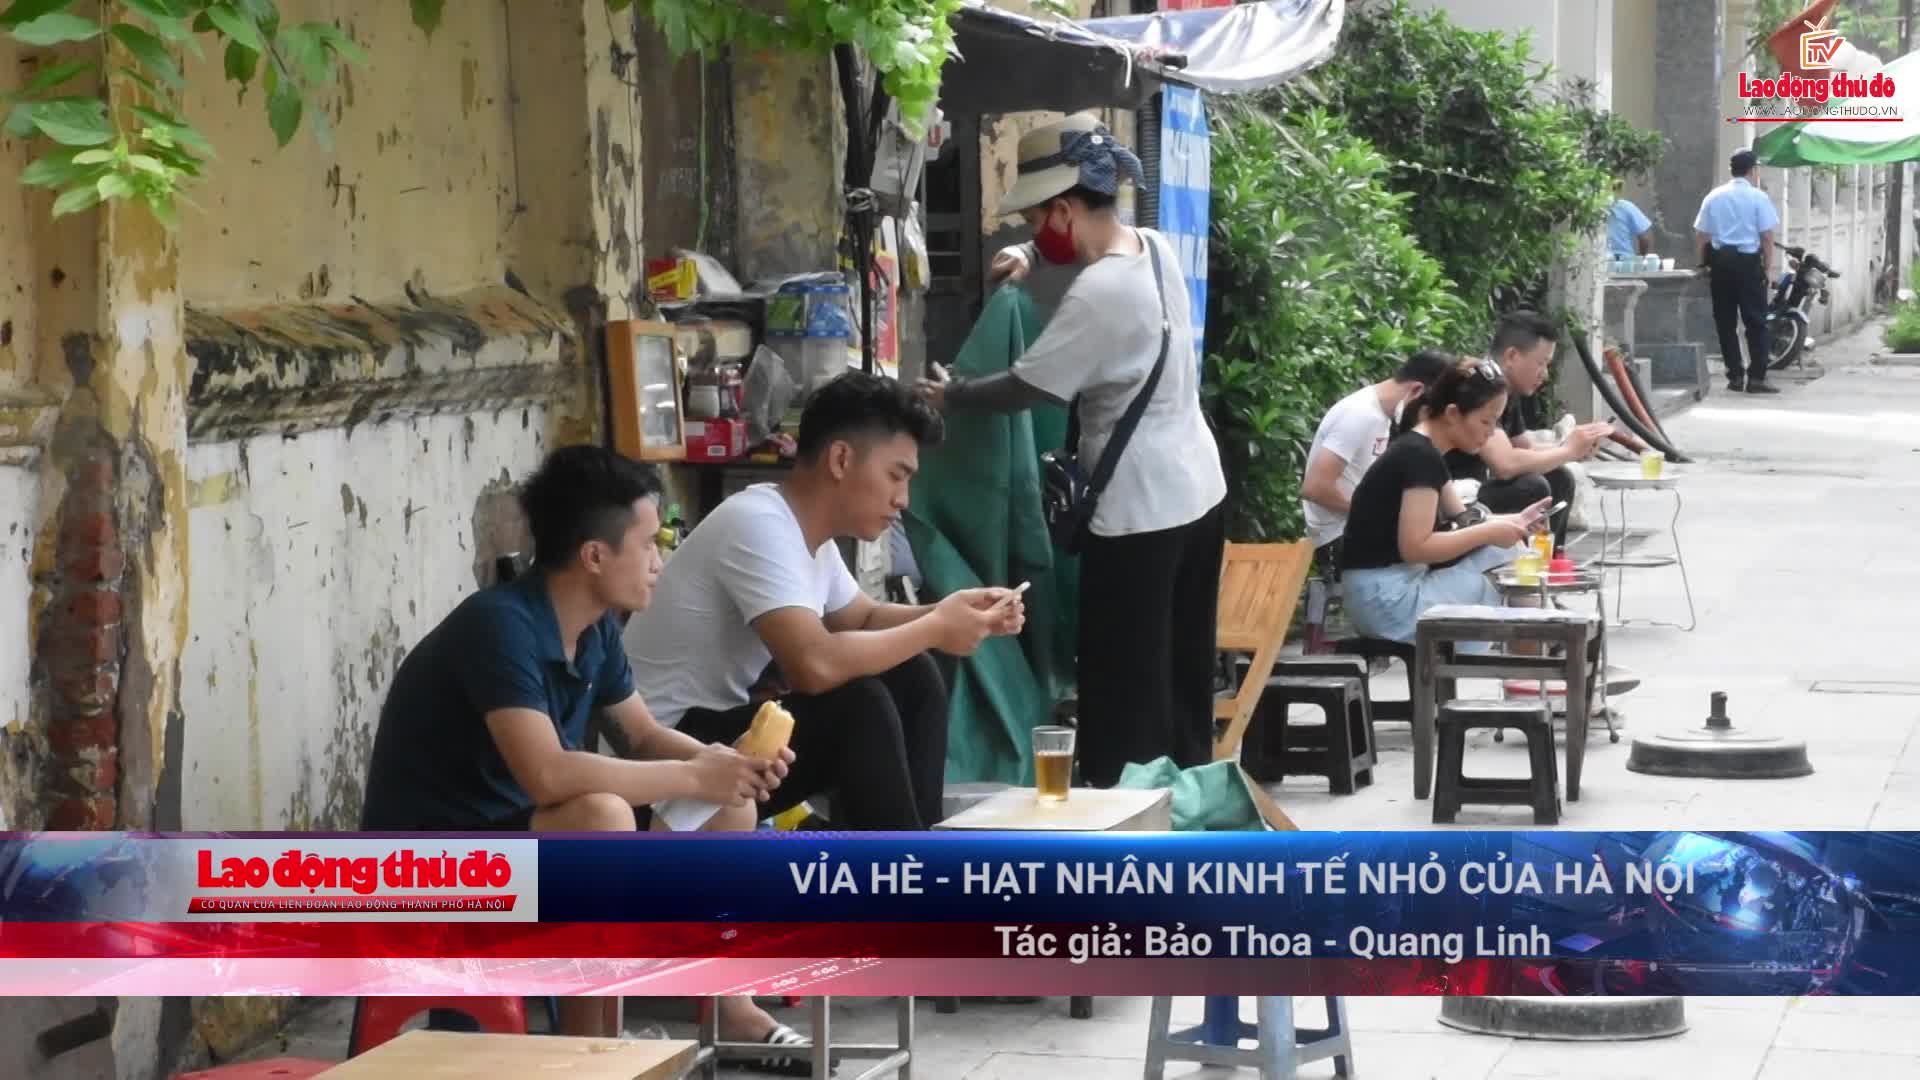 Vỉa hè - hạt nhân kinh tế nhỏ của Hà Nội